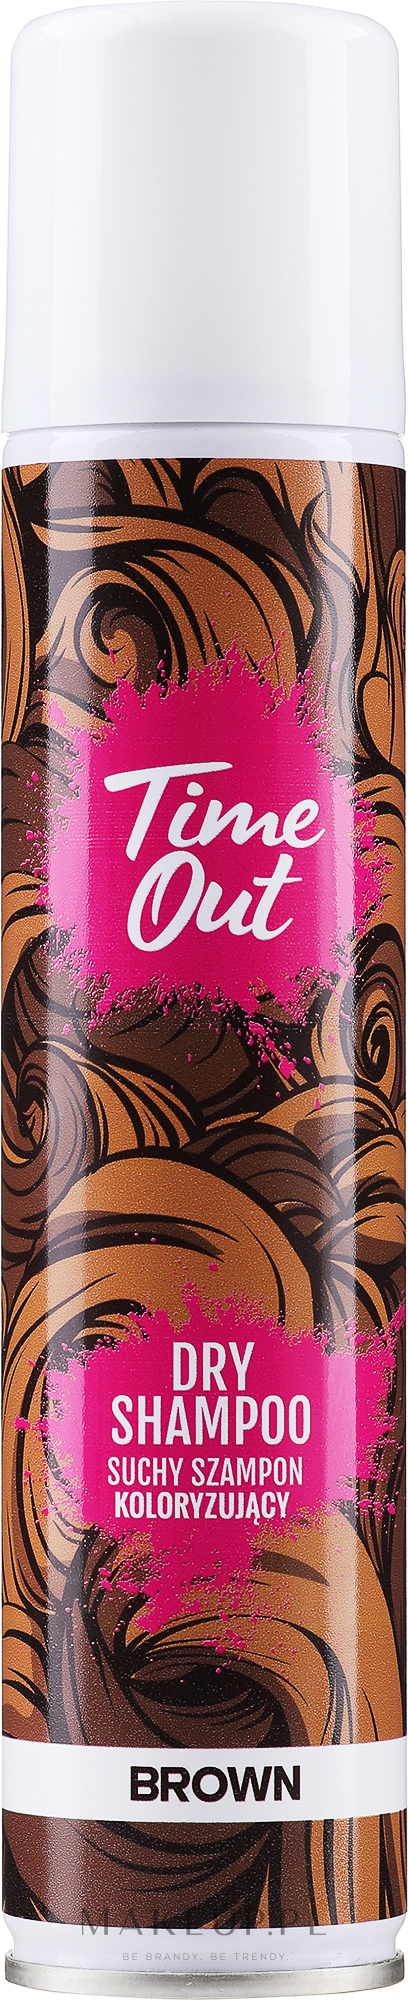 Suchy szampon do włosów farbowanych - Time Out Dry Shampoo — Zdjęcie Brown